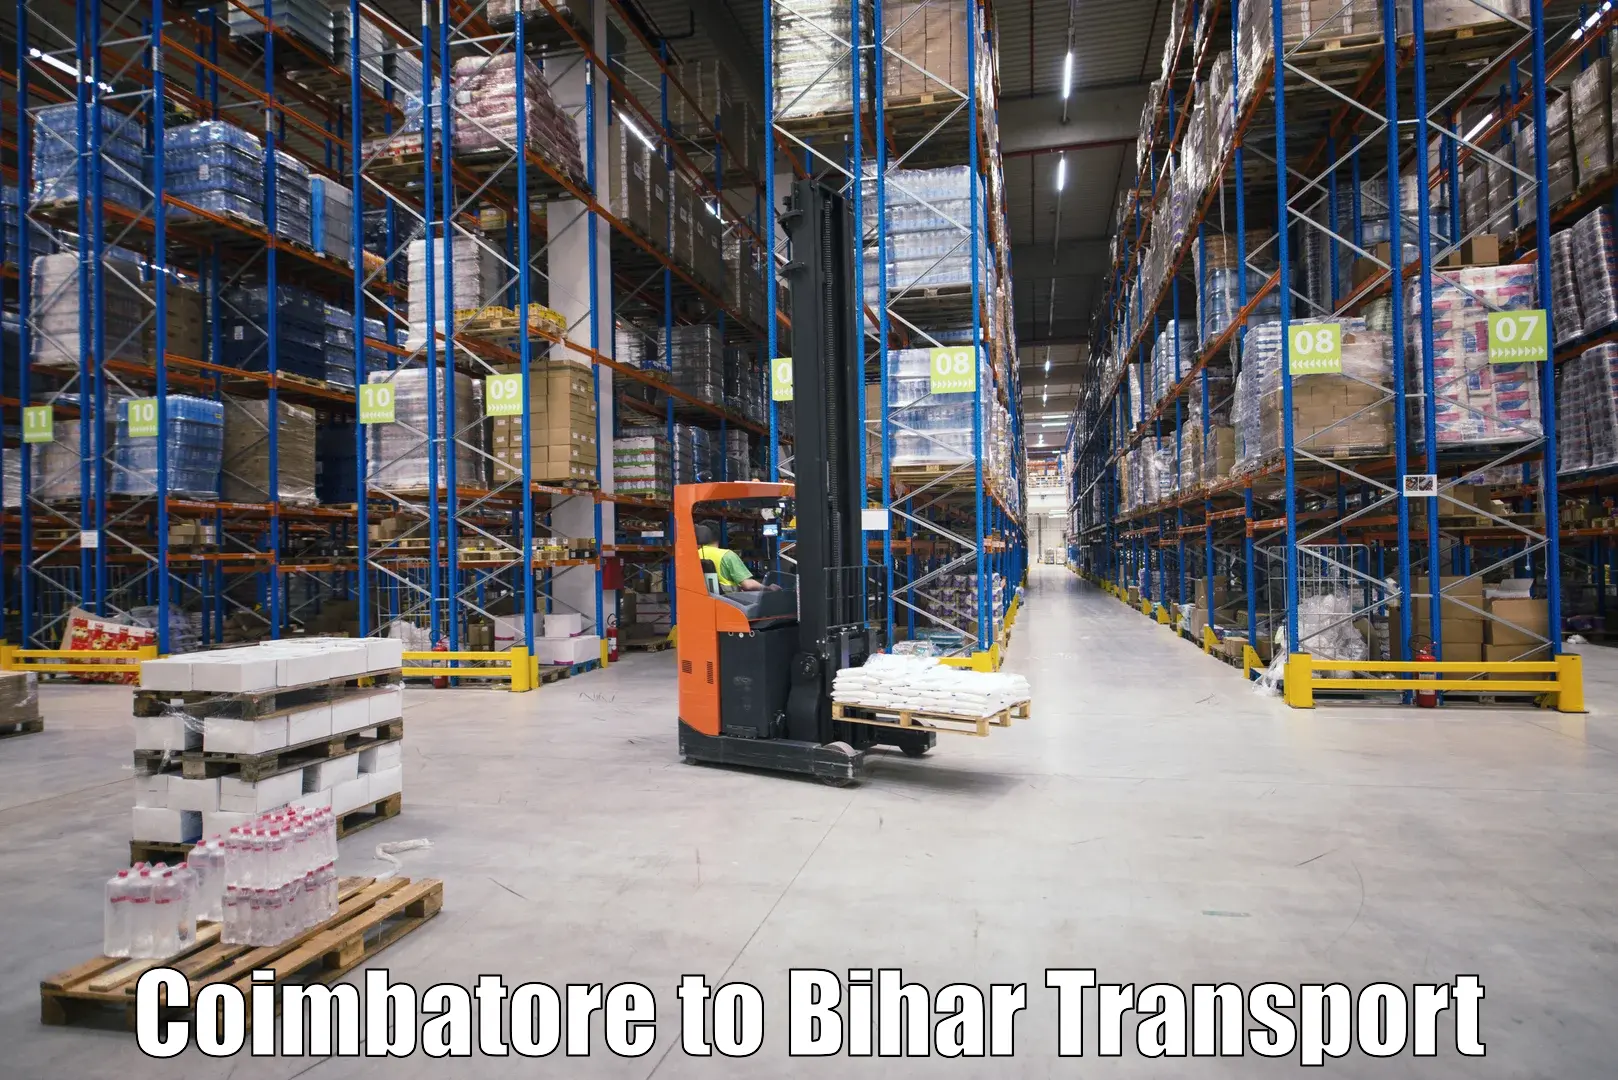 Furniture transport service Coimbatore to Lakhisarai